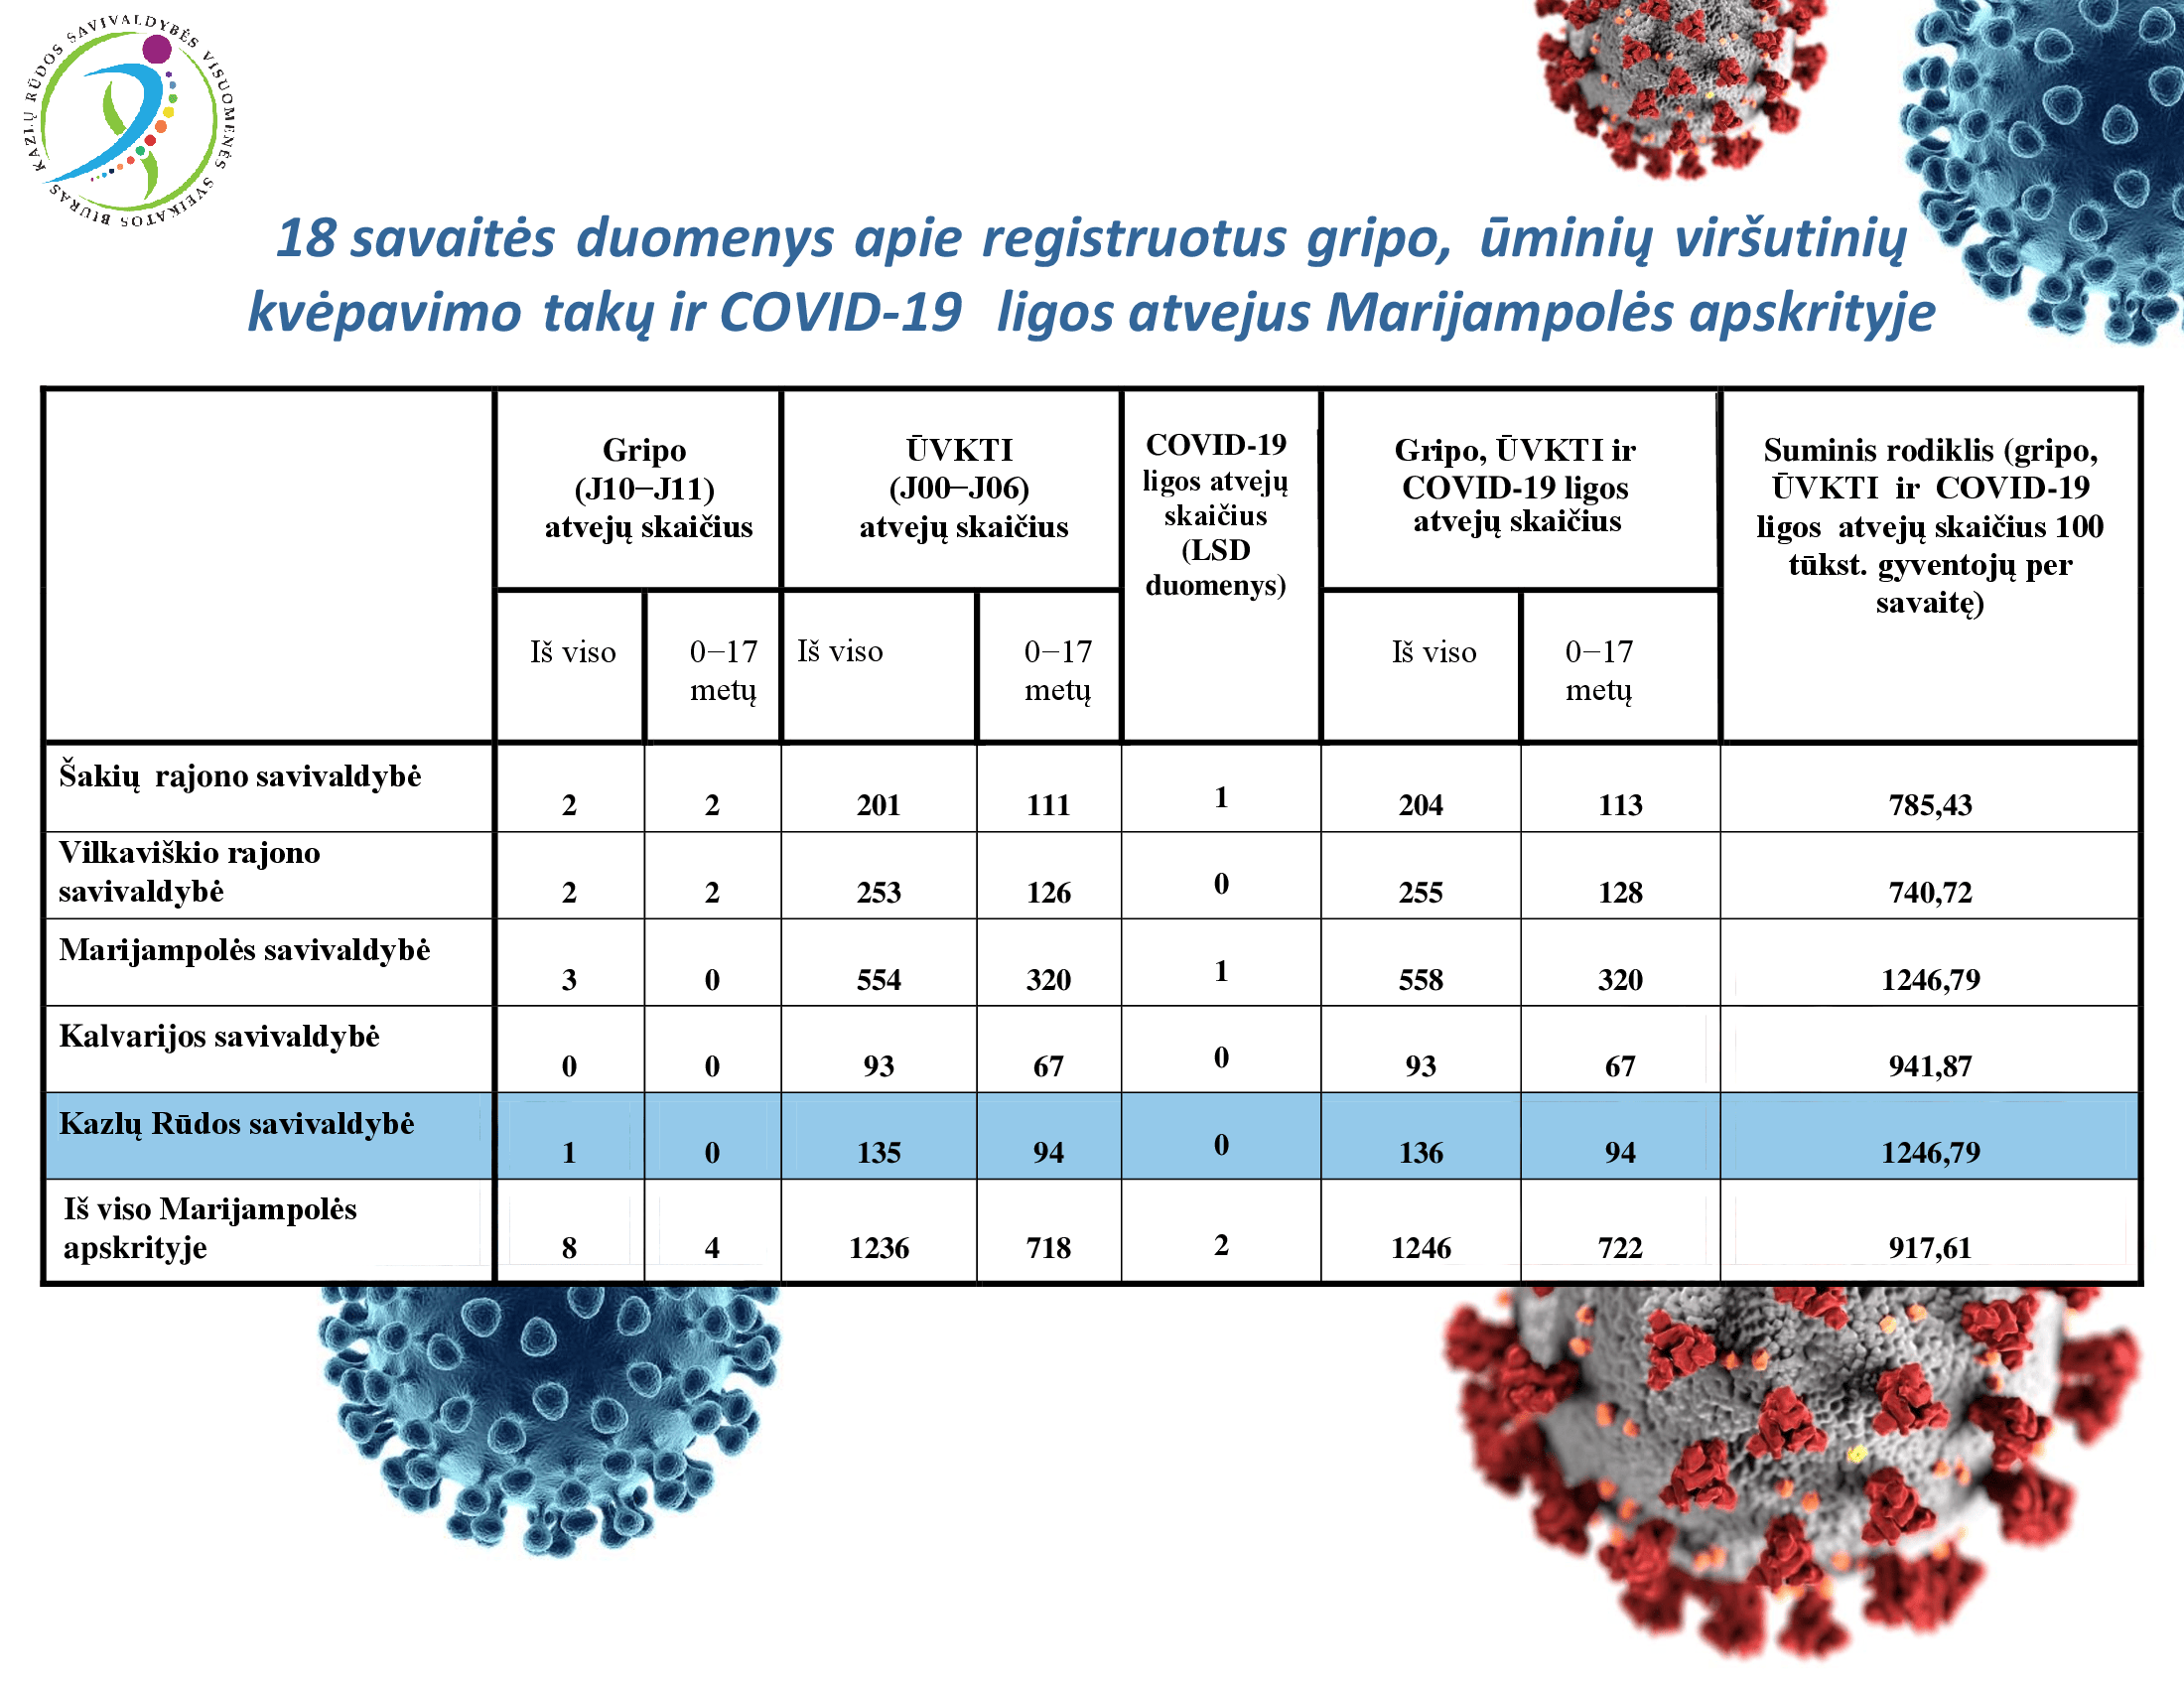 18-savaites-duomenys-apie-registruotus-gripo,-uminiu-virsutiniu-kvepavimo-taku-ir-covid-19-ligos-atvejus-marijampoles-apskrityje-